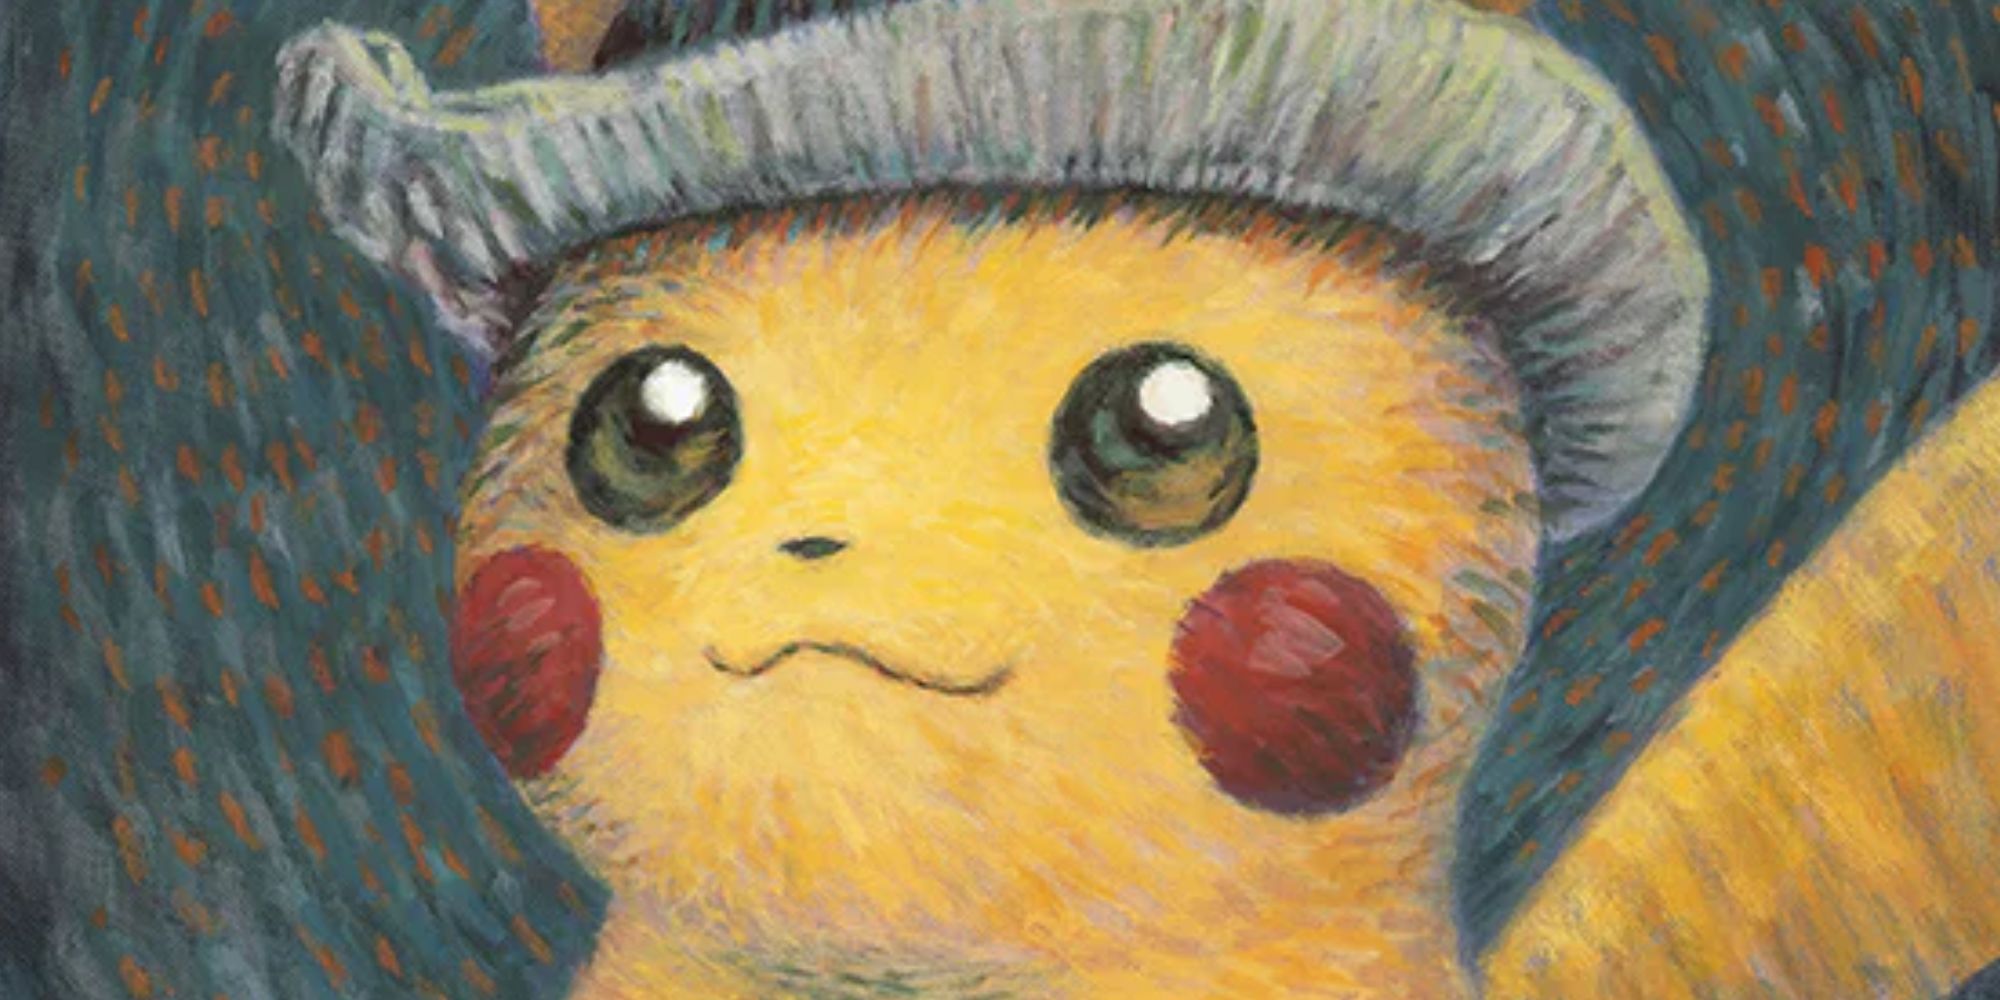 Kunst von Pikachu, dem elektrischen Maus-Pokémon, im Stil von Van Gogh.  Er trägt einen grauen Hut.